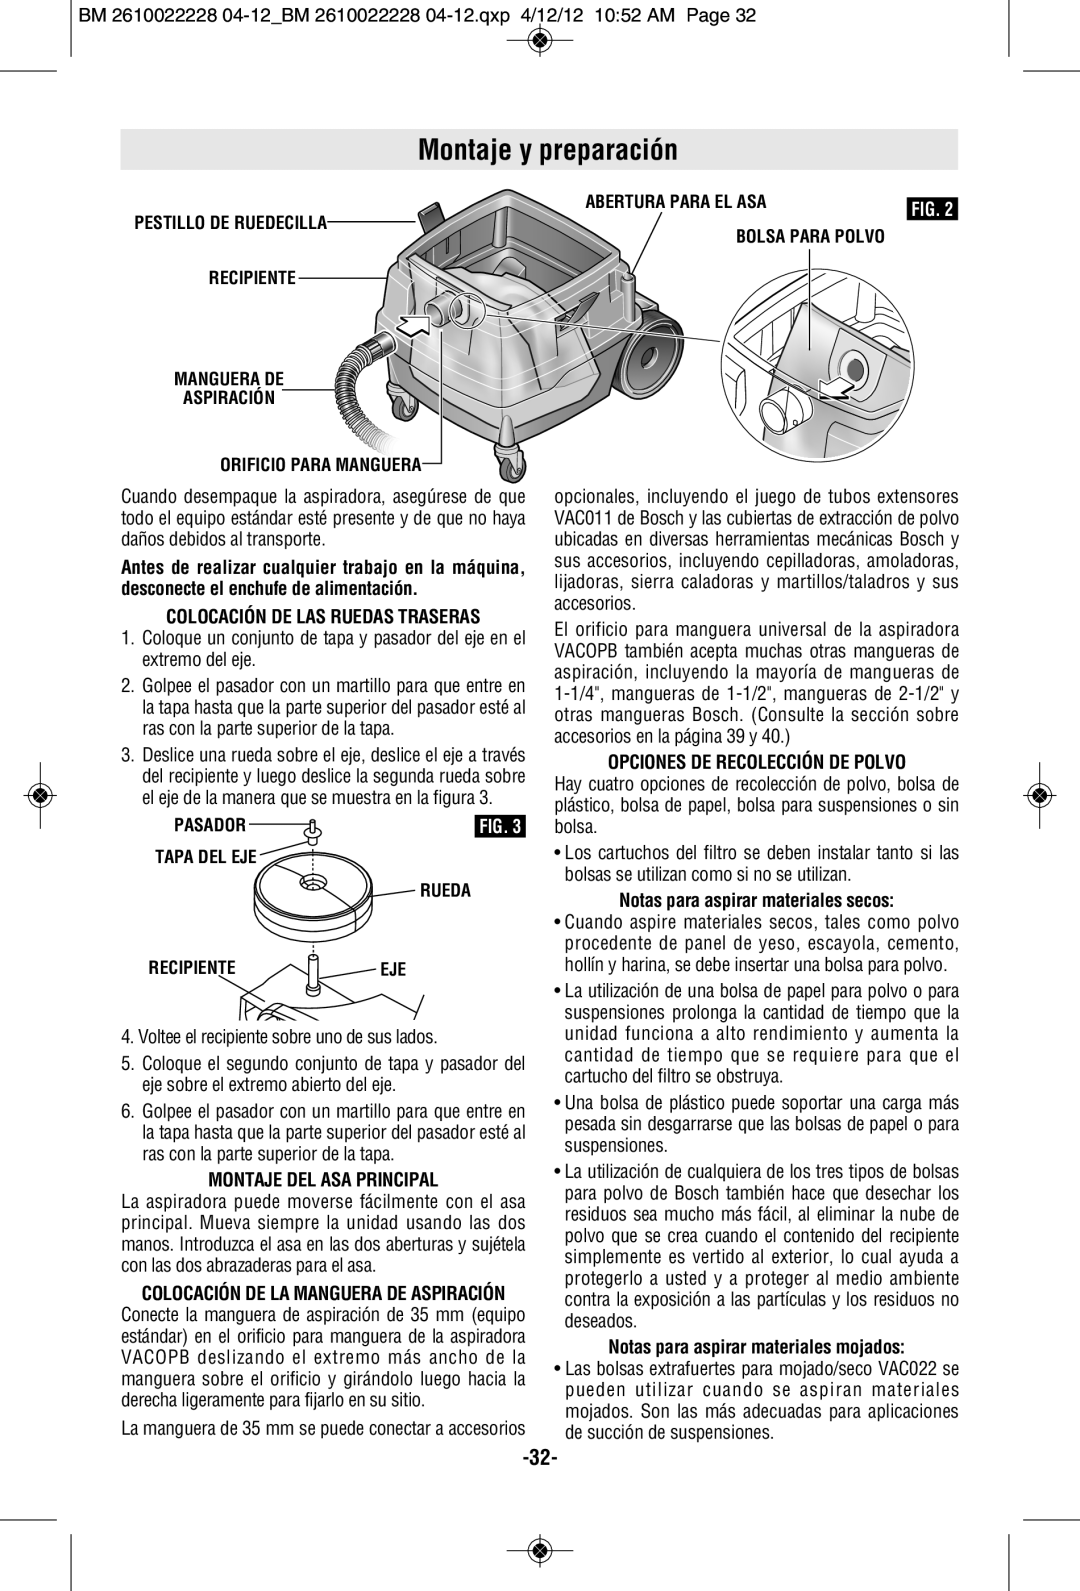 Bosch Power Tools 3931A-PB manual Montaje y preparación, Montaje Del Asa Principal, Opciones De Recolección De Polvo 